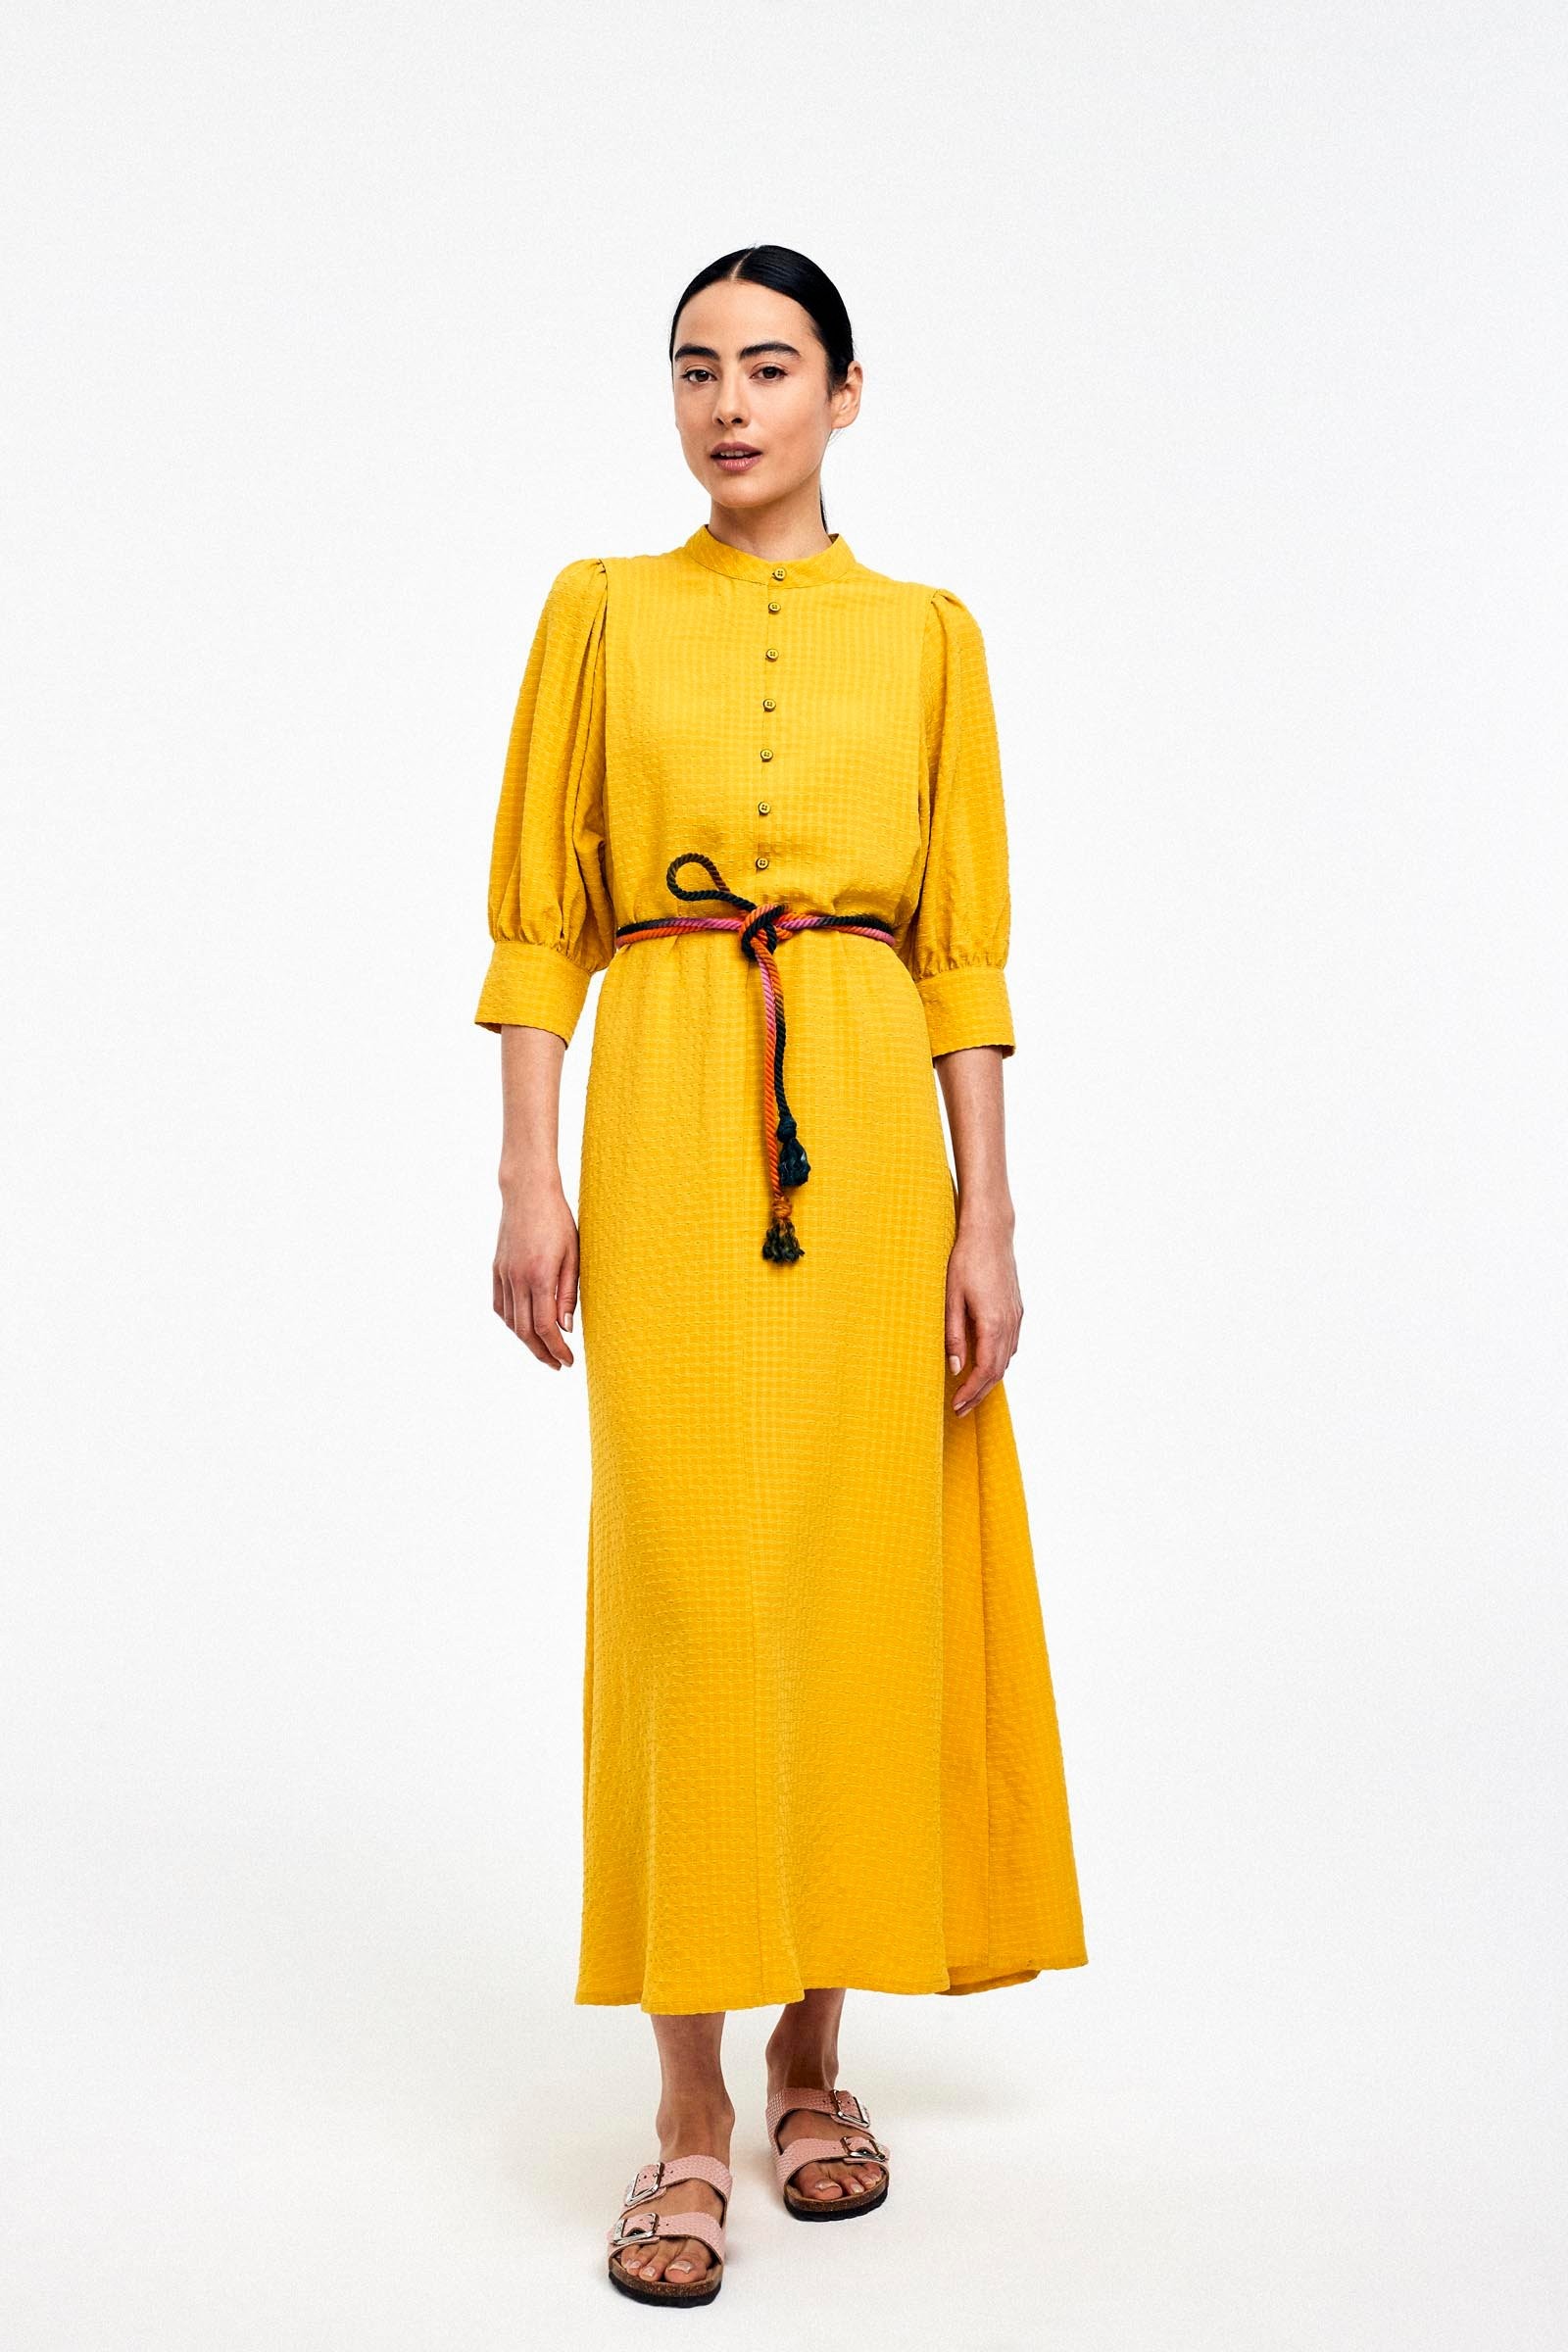 RILLYS - lange jurk - geel | CKS Fashion